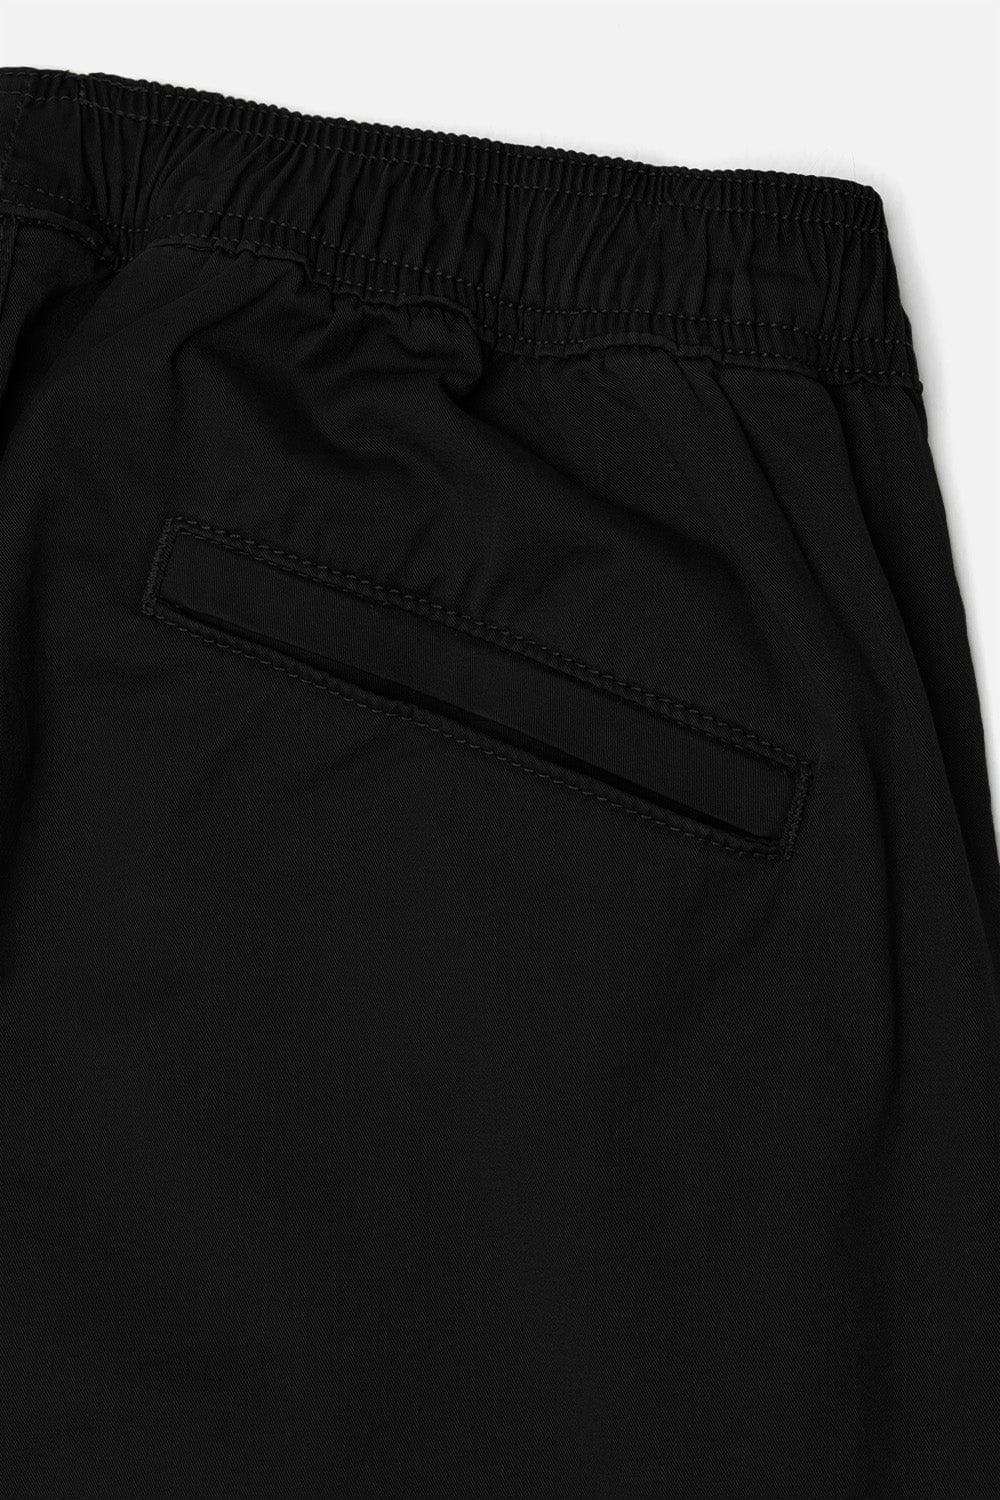 Double Cargo Pants 2.0 Black| Kuwalla Tee